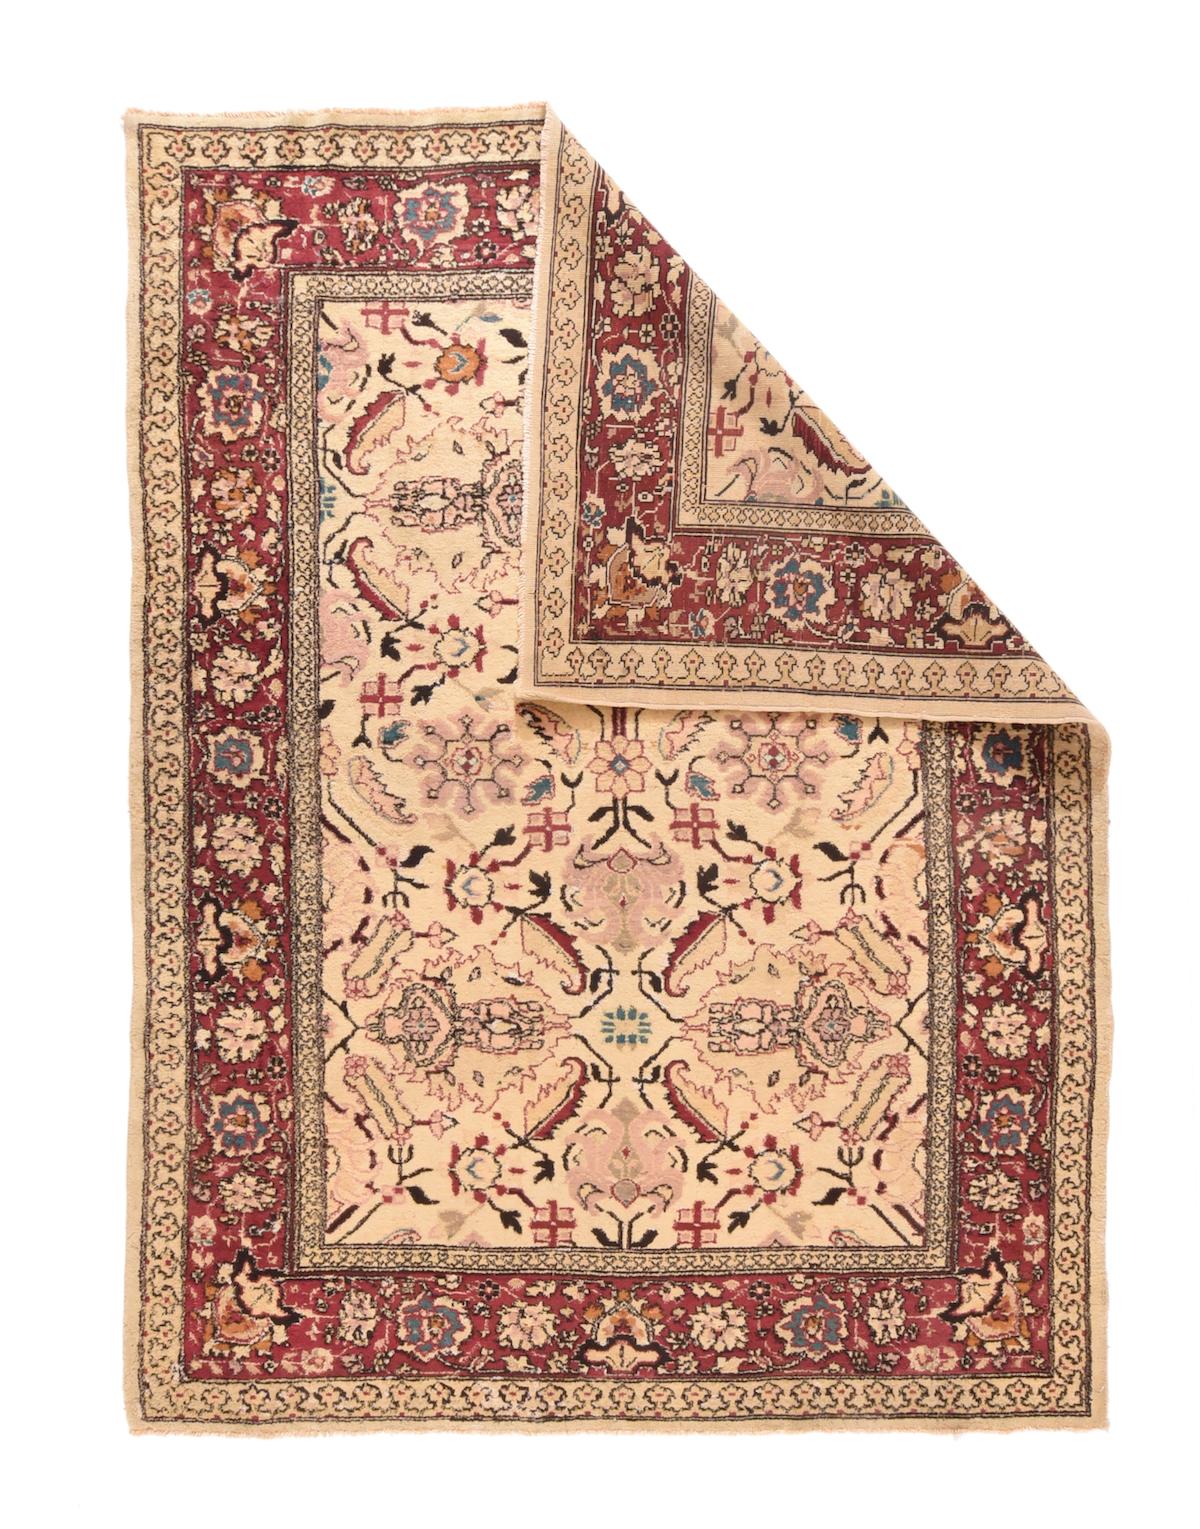 Feiner antiker Agra-Teppich 6' x 7'9''. Das sandige Strohfeld zeigt einen vertikalen Doppelrapport von Palmettenkreuzen, die auf kleinen Rosetten und einer etwas größeren Rosette zentriert sind. Kleine Oktogramme mit strahlenförmig angeordneten